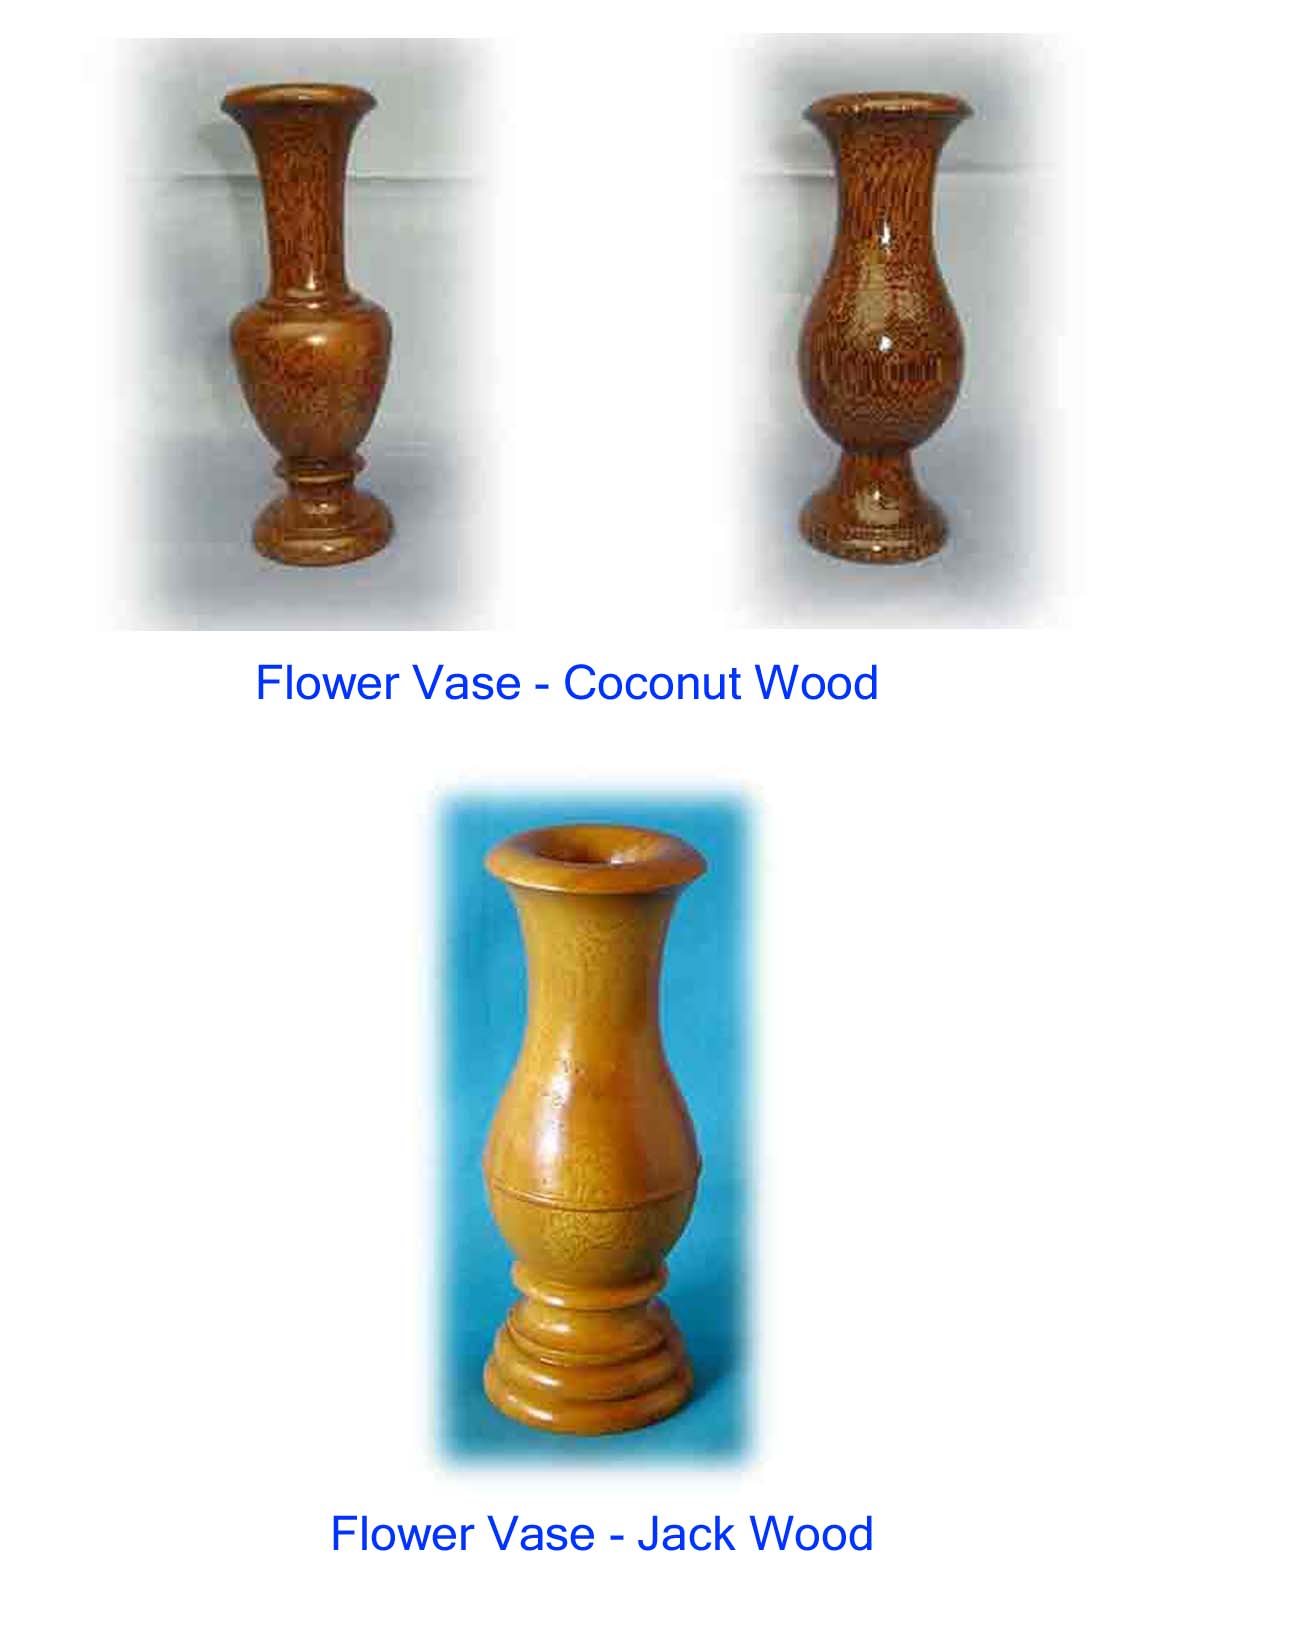 Wooden Flower Vases (Holz Blumenvasen)